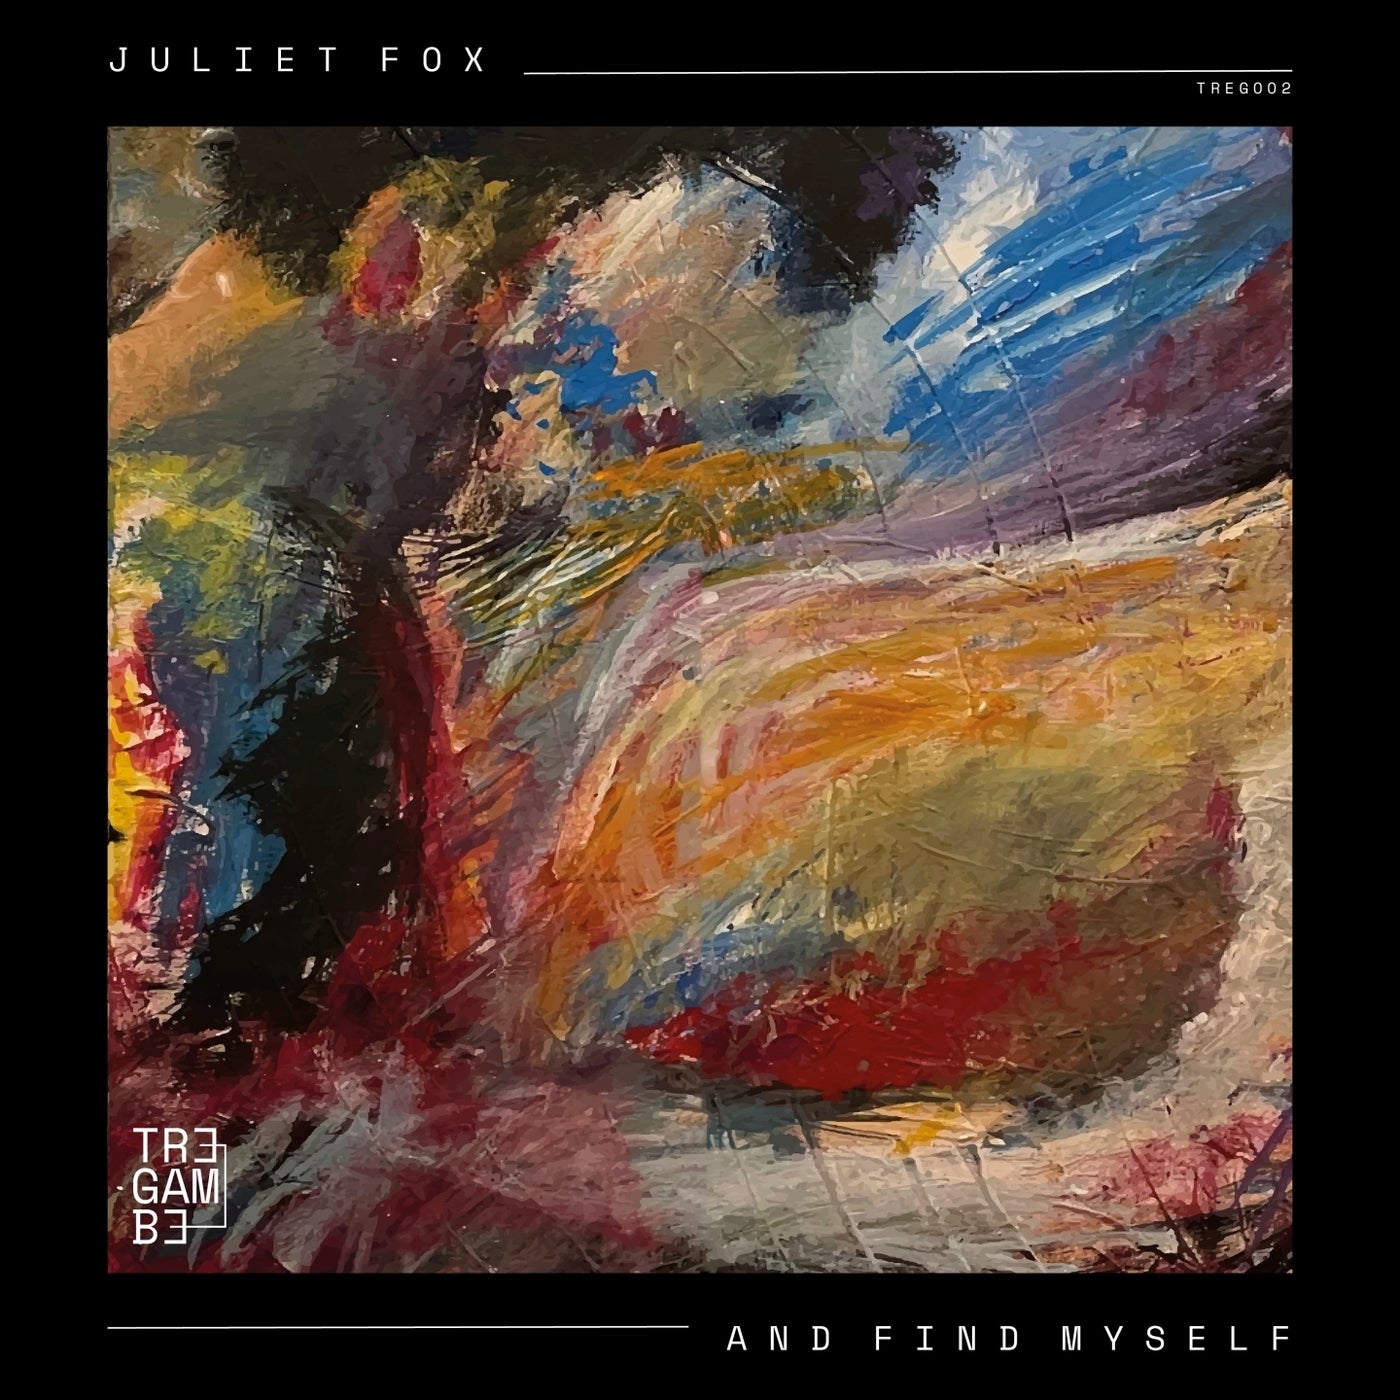 Juliet Fox – And Find Myself [TREG002]